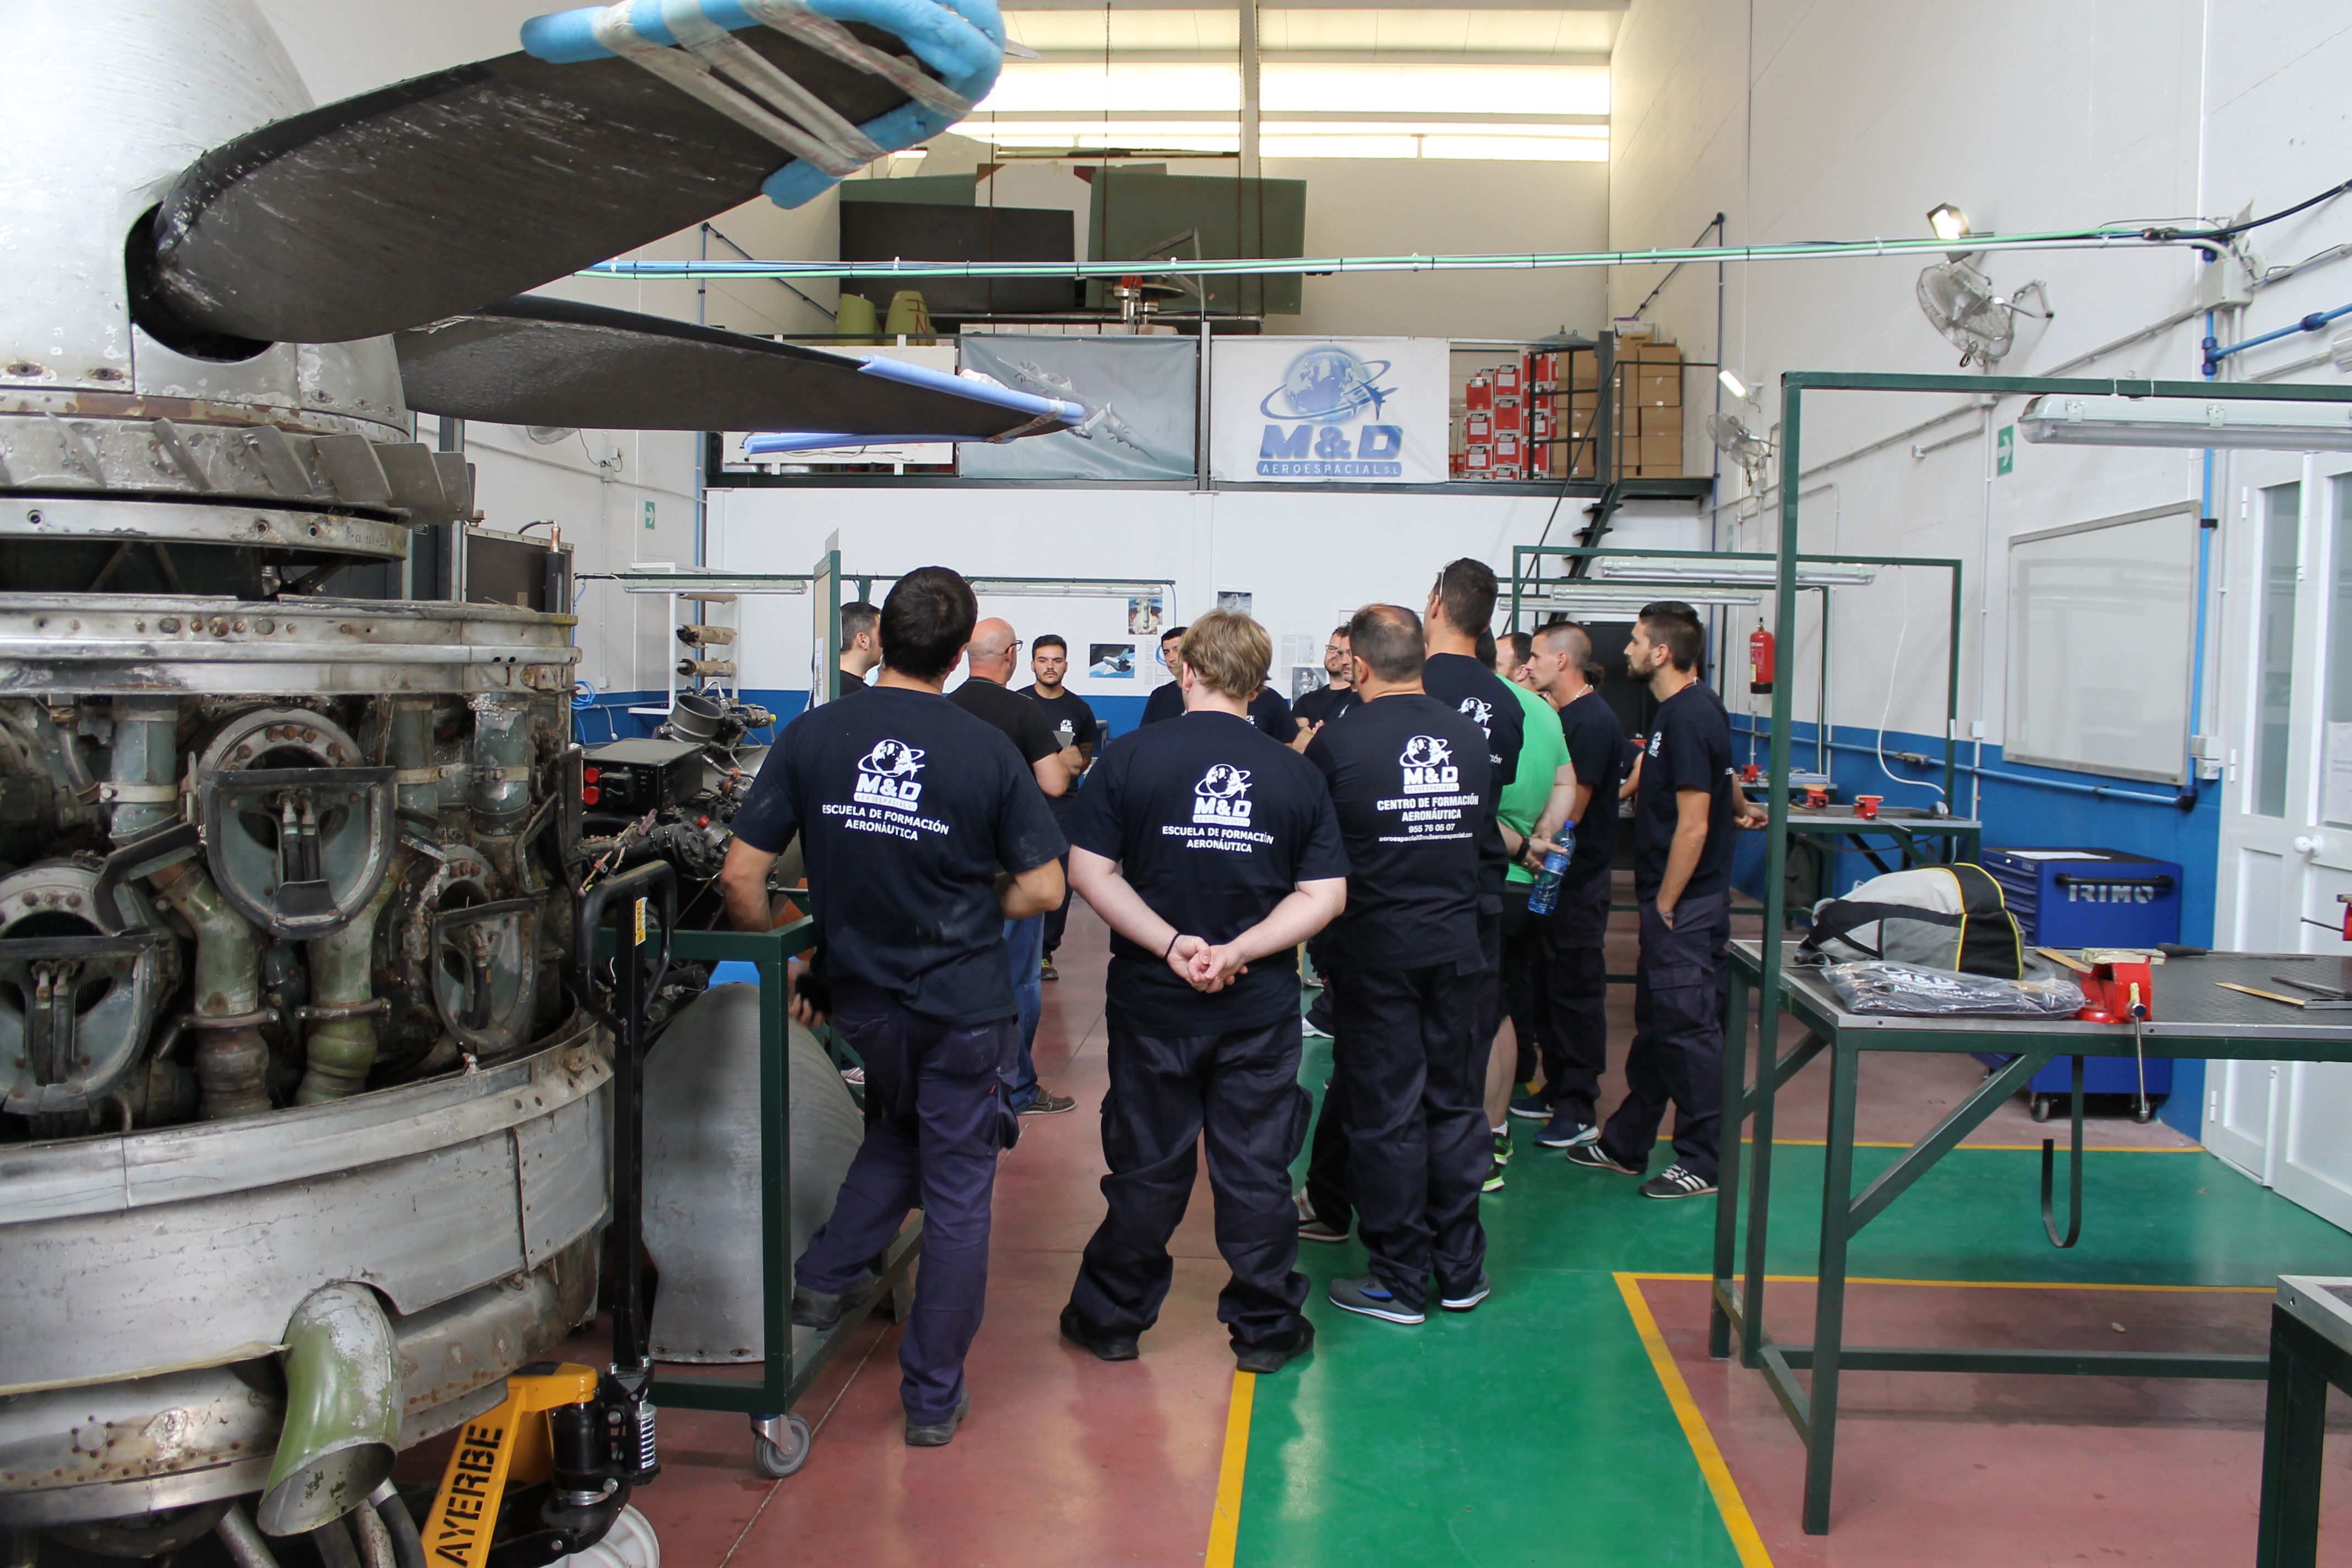 Alumnos en prácticas de M&D Aeroespacial, una de las empresas que trabaja en la provincia de Cádiz.